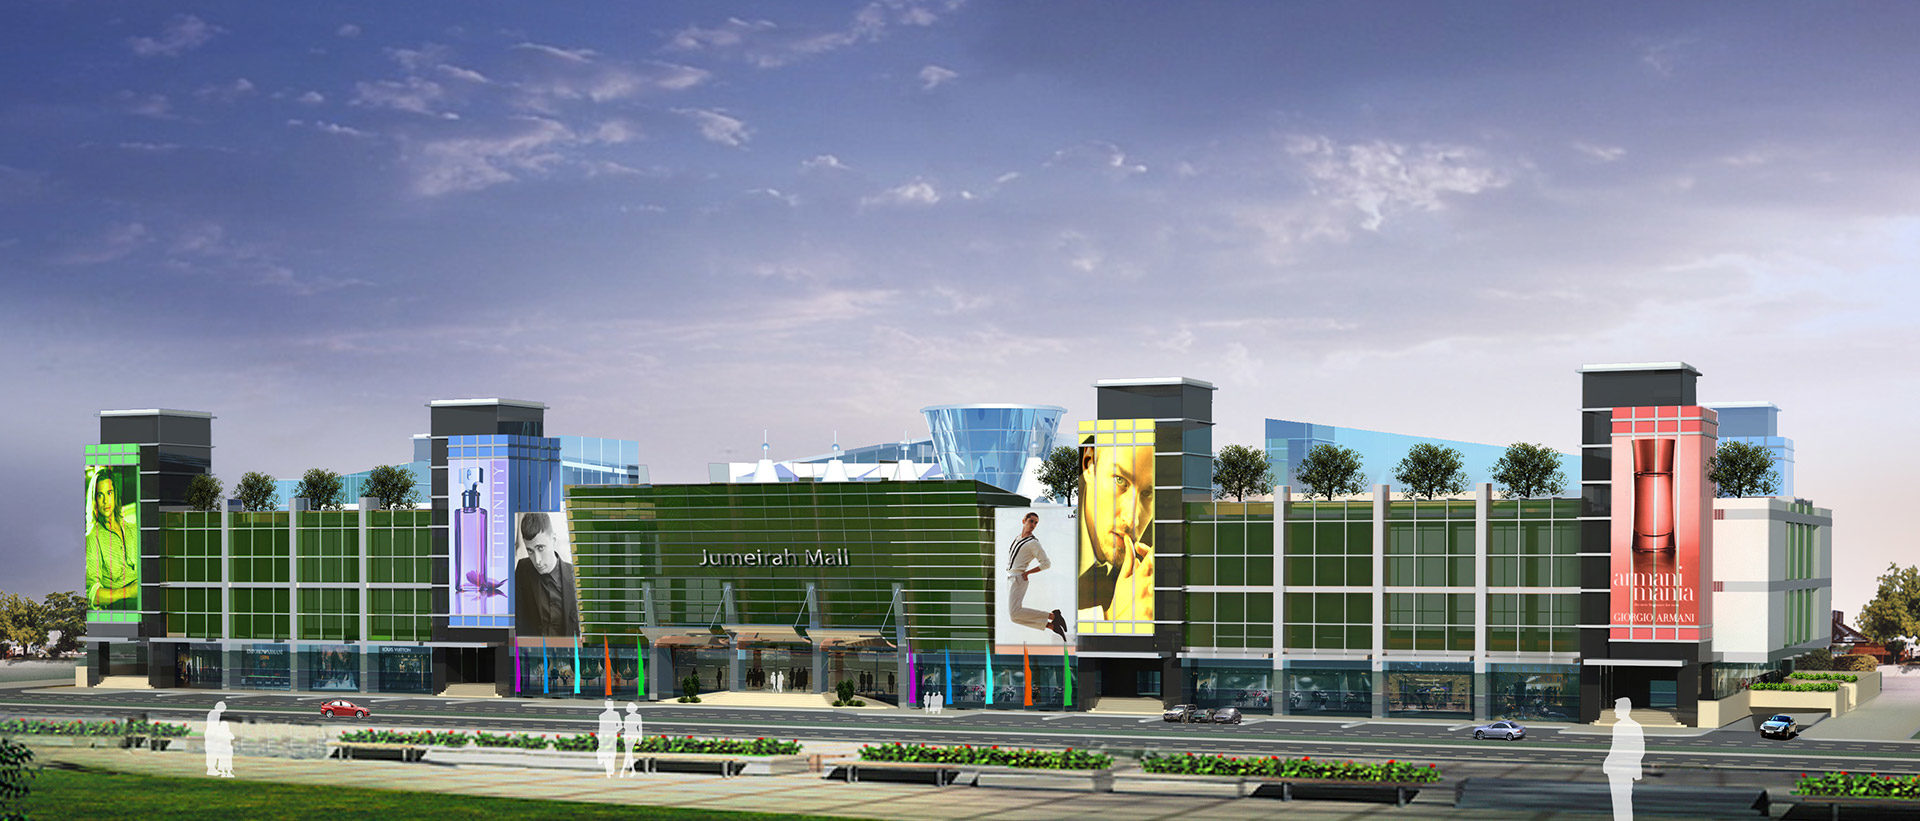 Jumeirah Shopping Centre